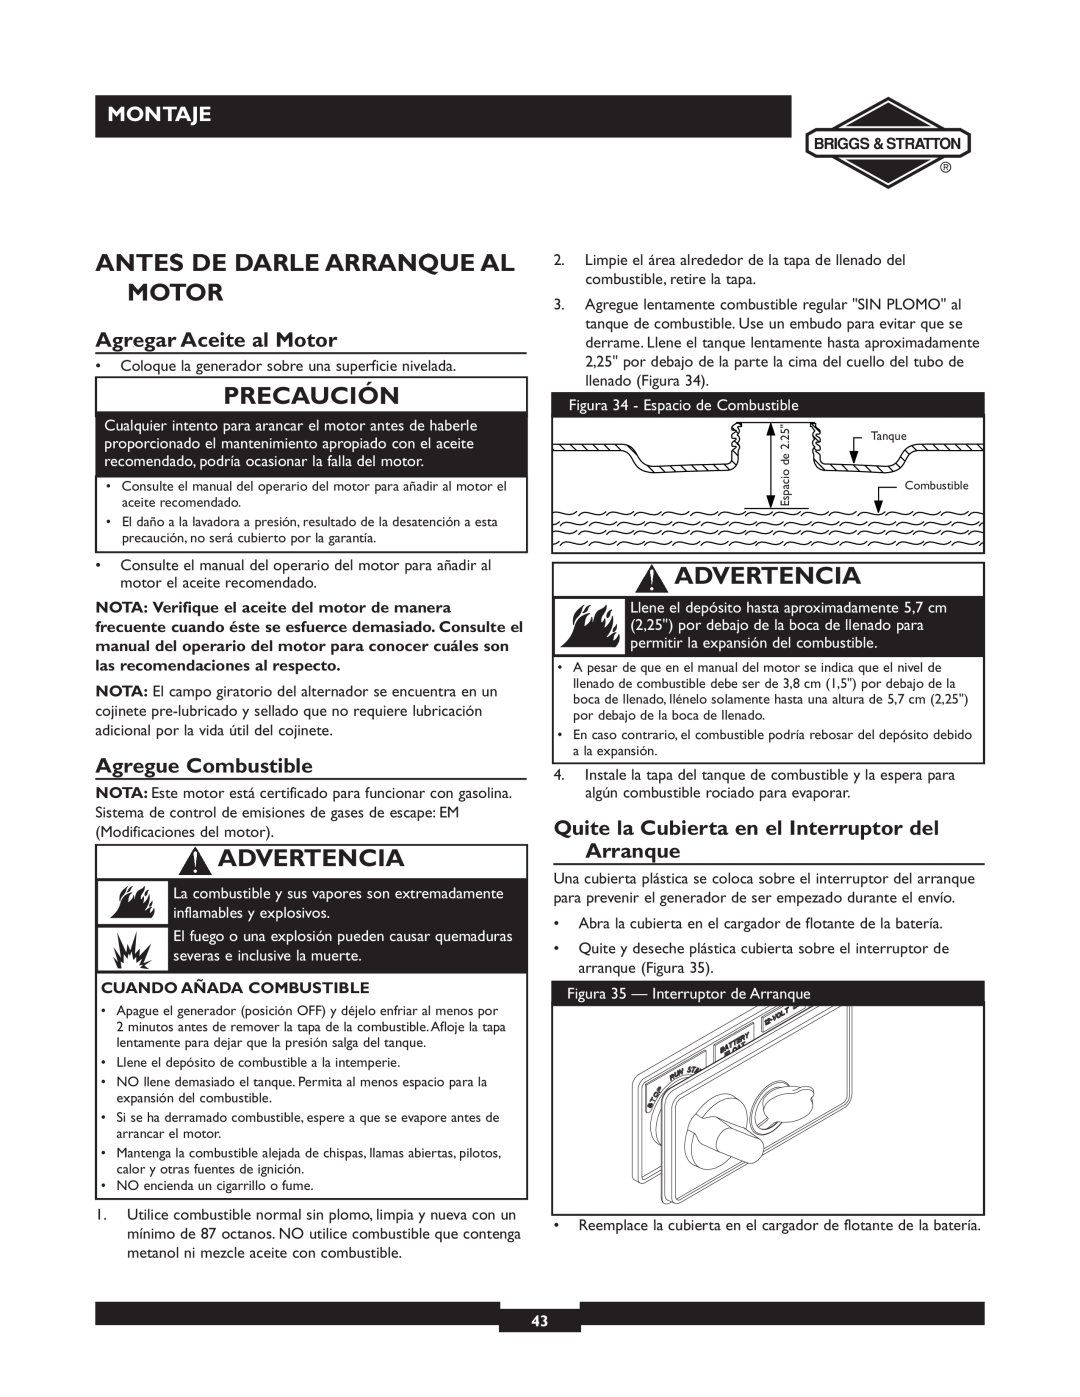 Briggs & Stratton 01894-1 manual Antes De Darle Arranque Al Motor, Agregar Aceite al Motor, Agregue Combustible, Precaución 